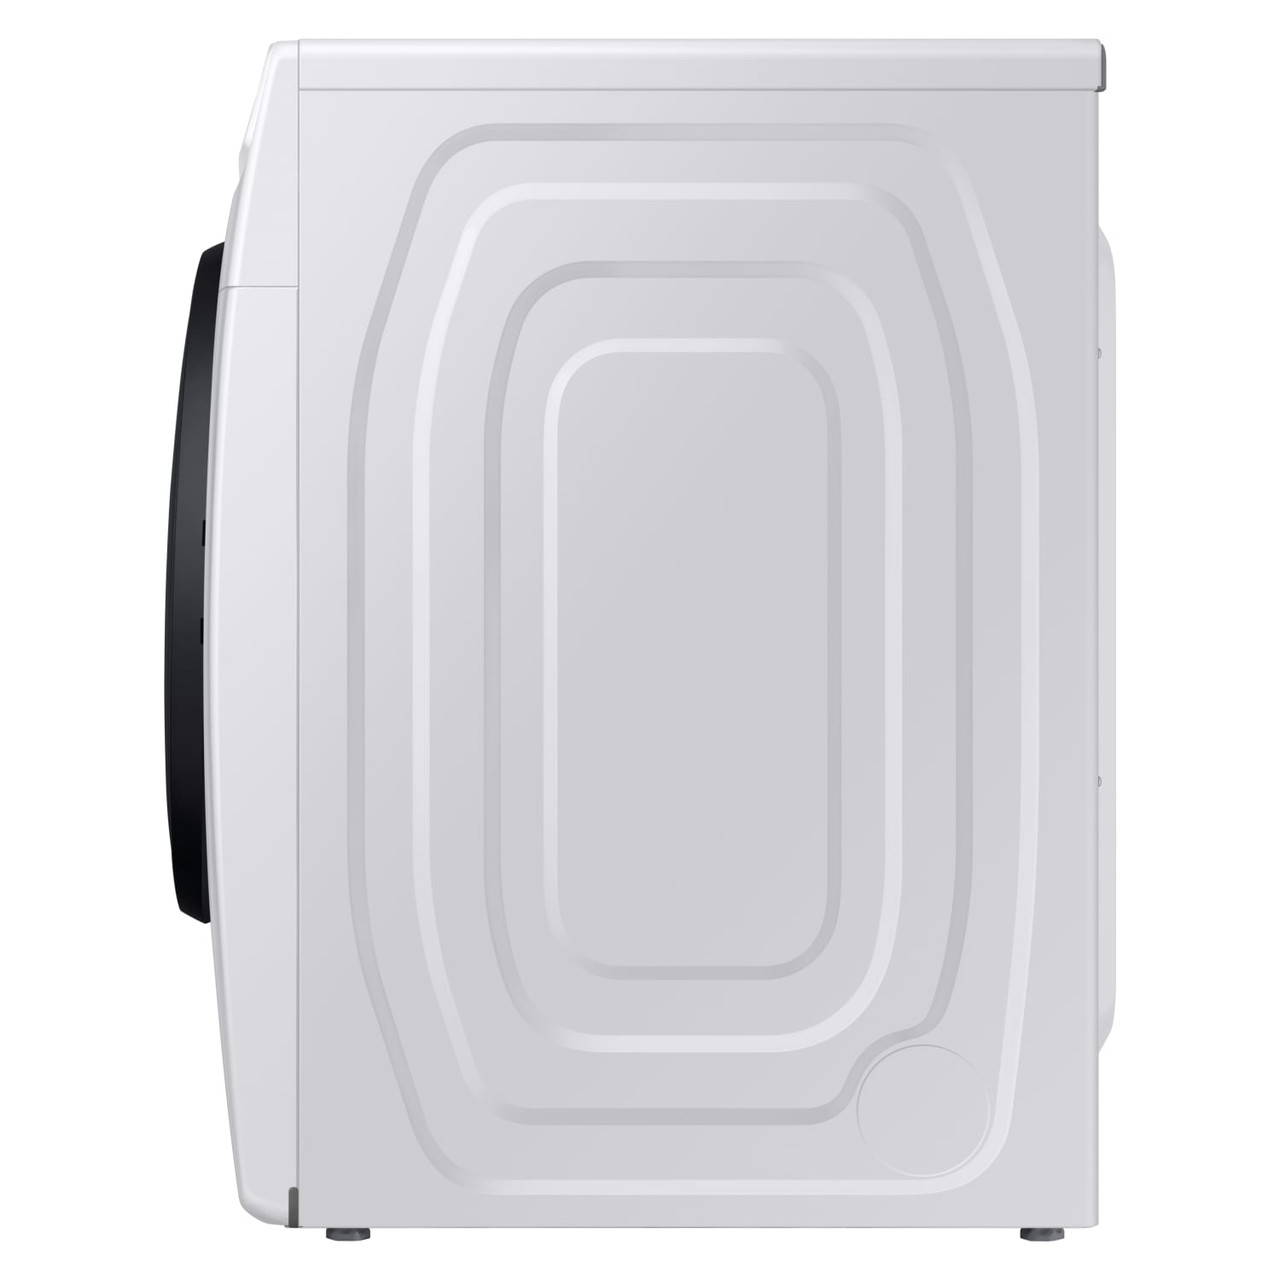 Samsung 7.5 cu. ft. Gas Dryer w/ Steam Sanitize+ - DVG45R6100W